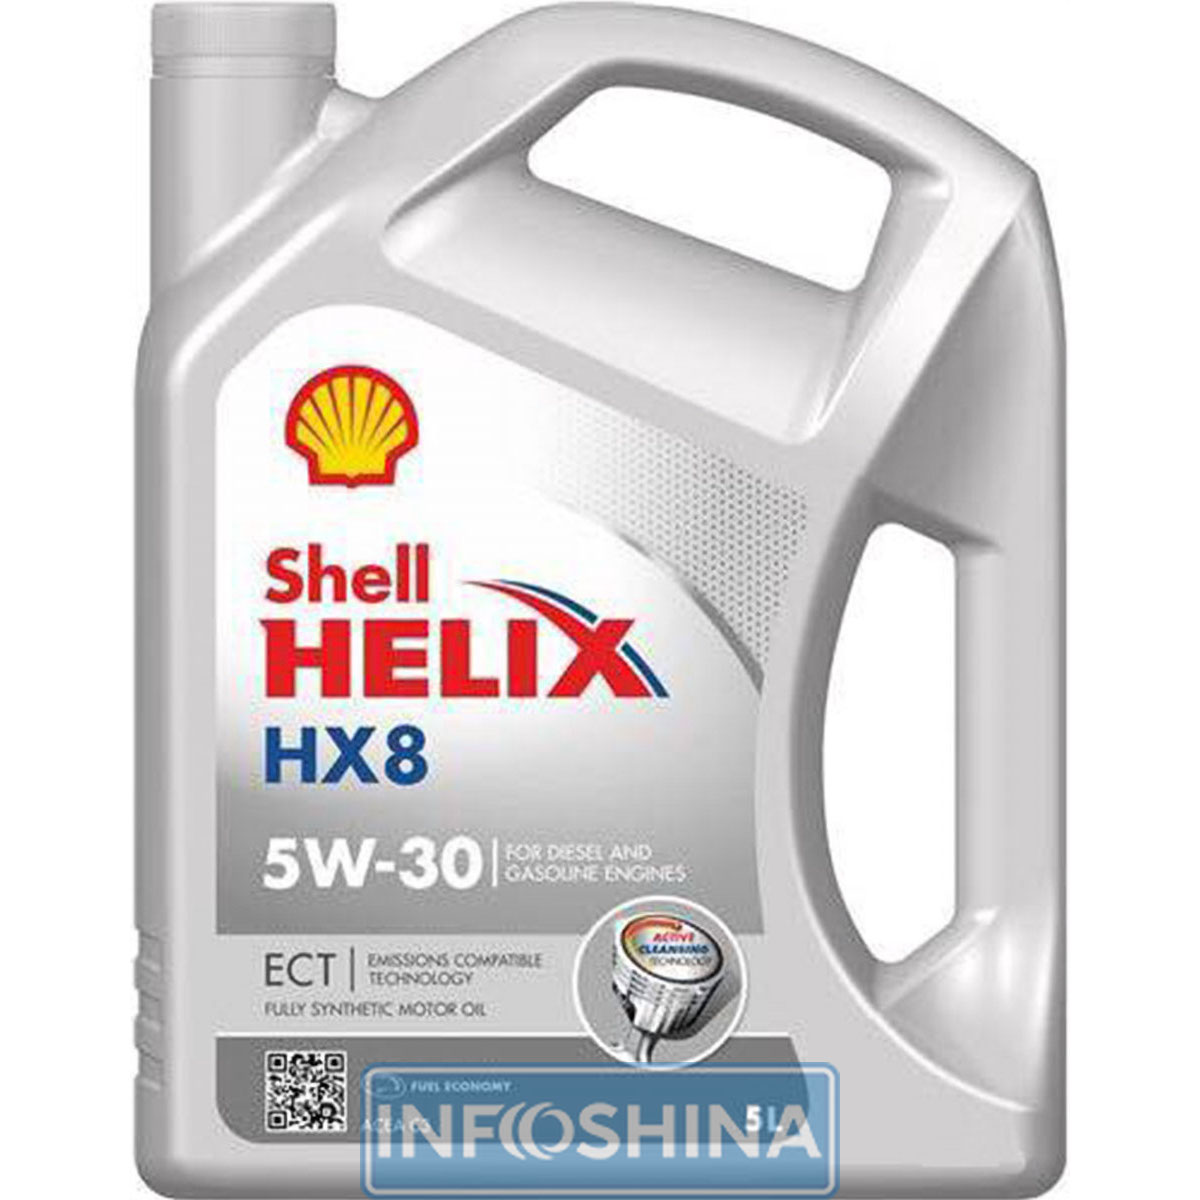 Shell Helix HX8 ECT 5W-40